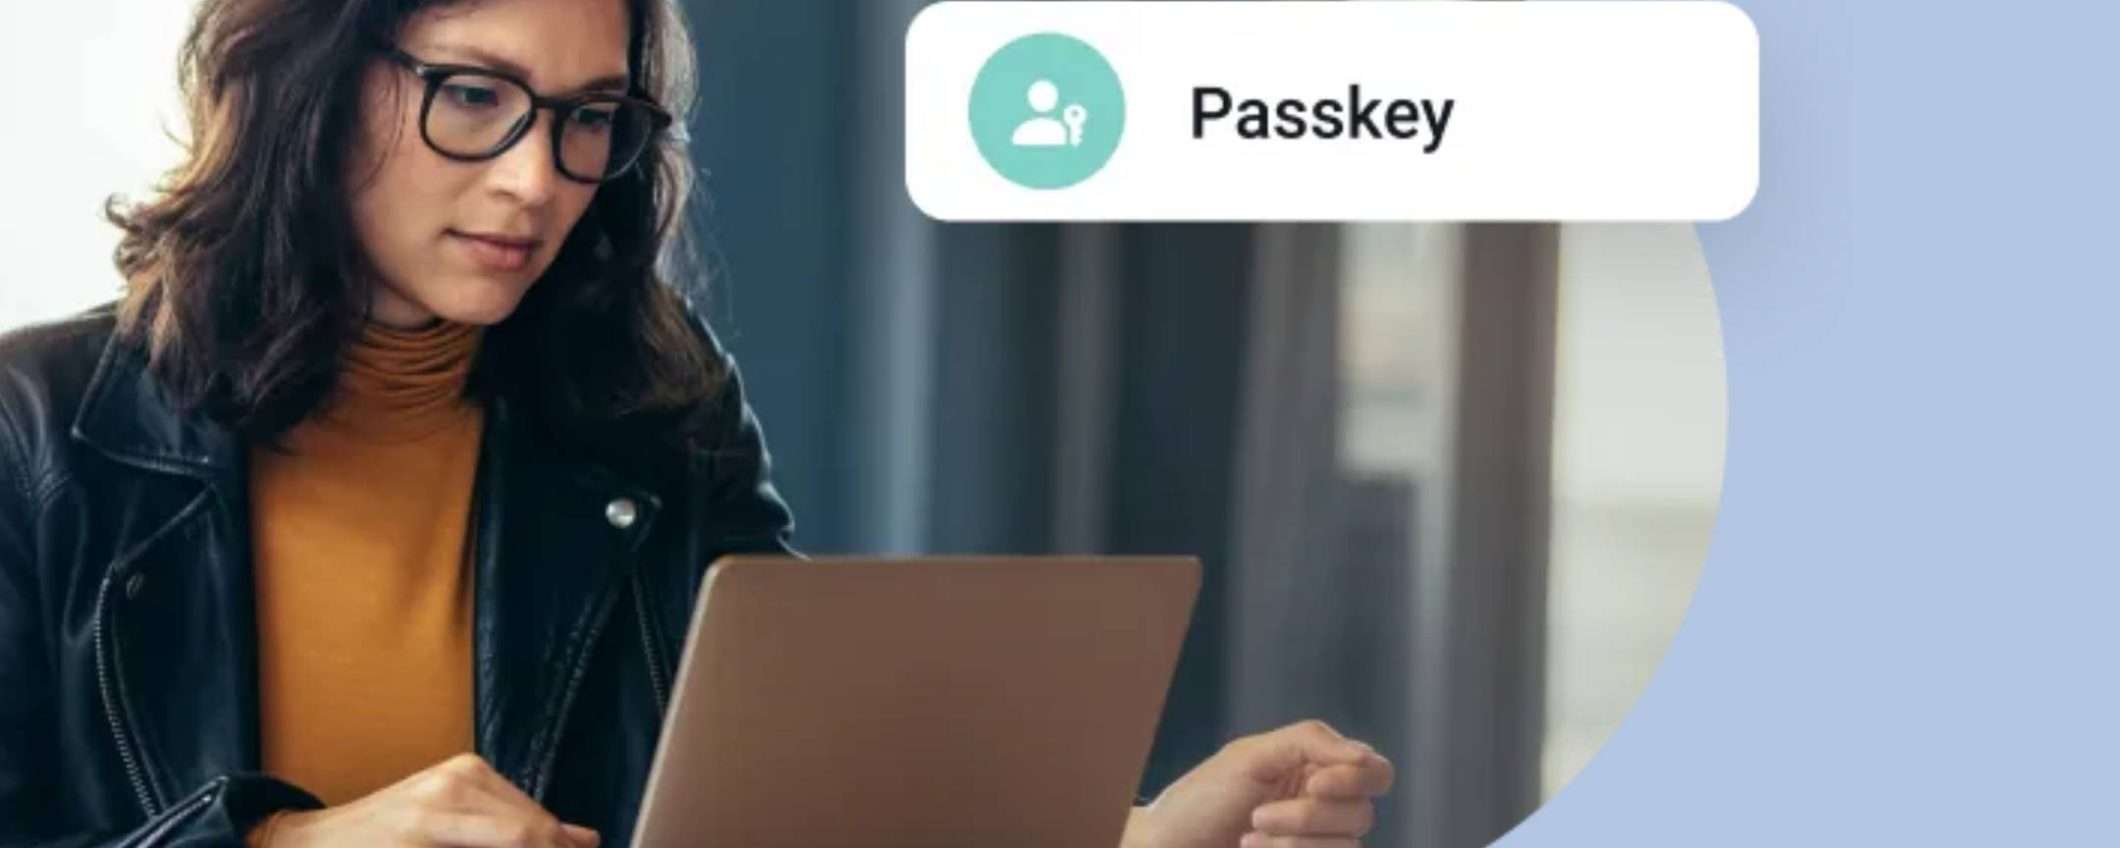 NordPass: una soluzione sicura per password e passkey